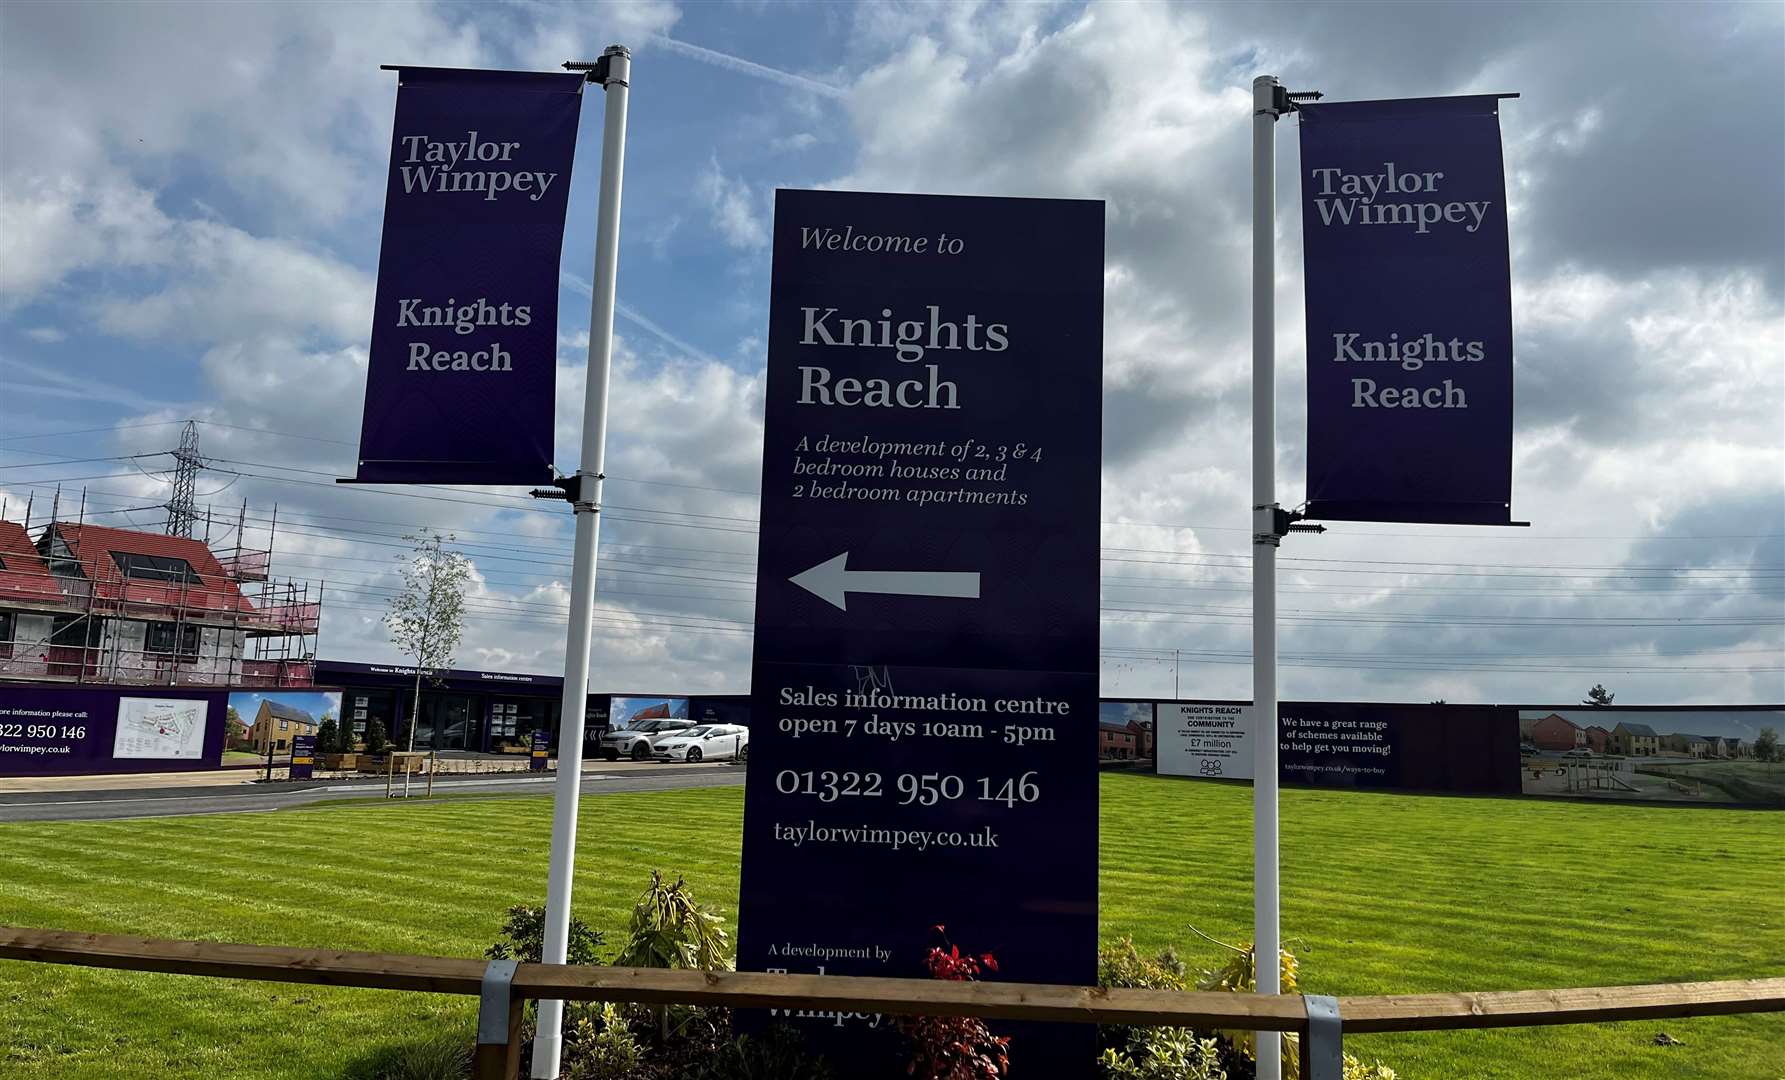 Taylor Wimpey's Knights Reach development in Stone, near Dartford